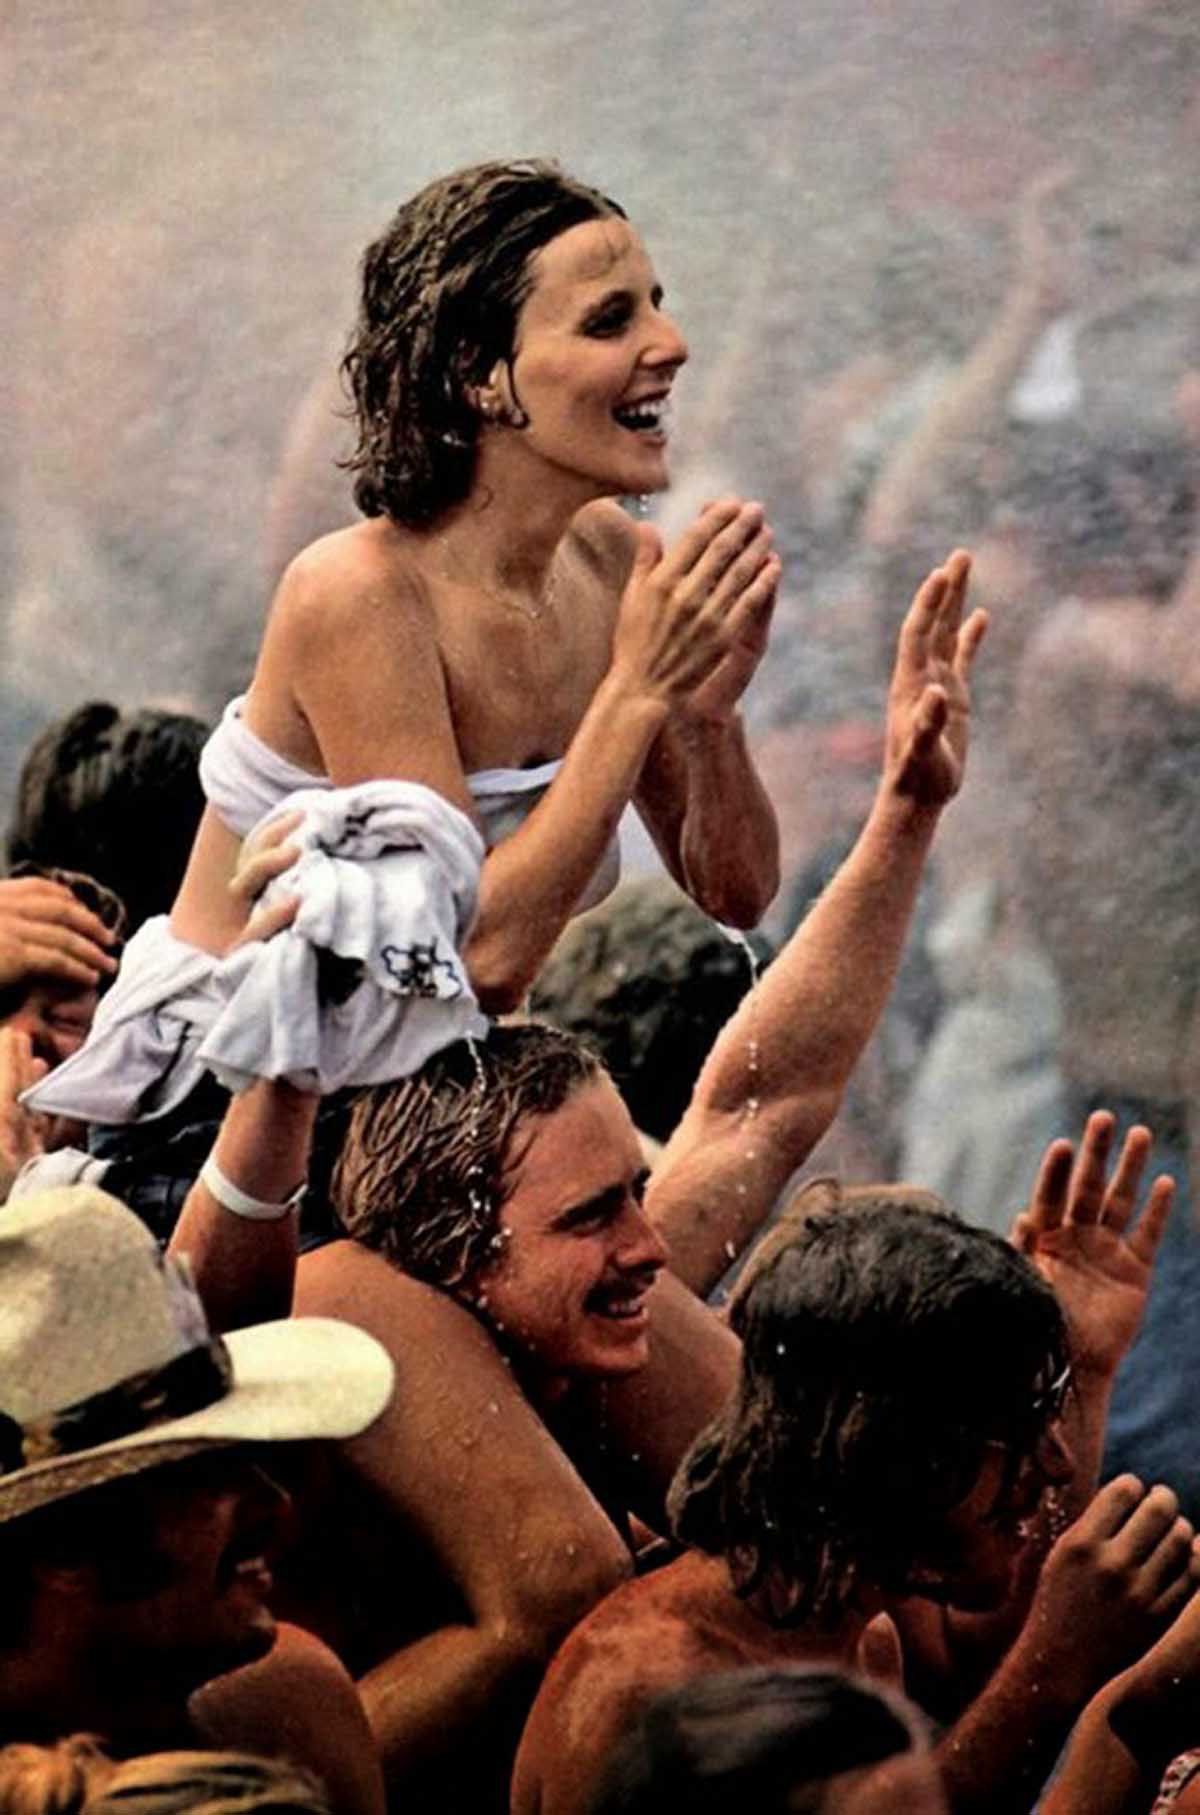 Fotos impressionantes retratam a moda rebelde de Woodstock em 1969 40